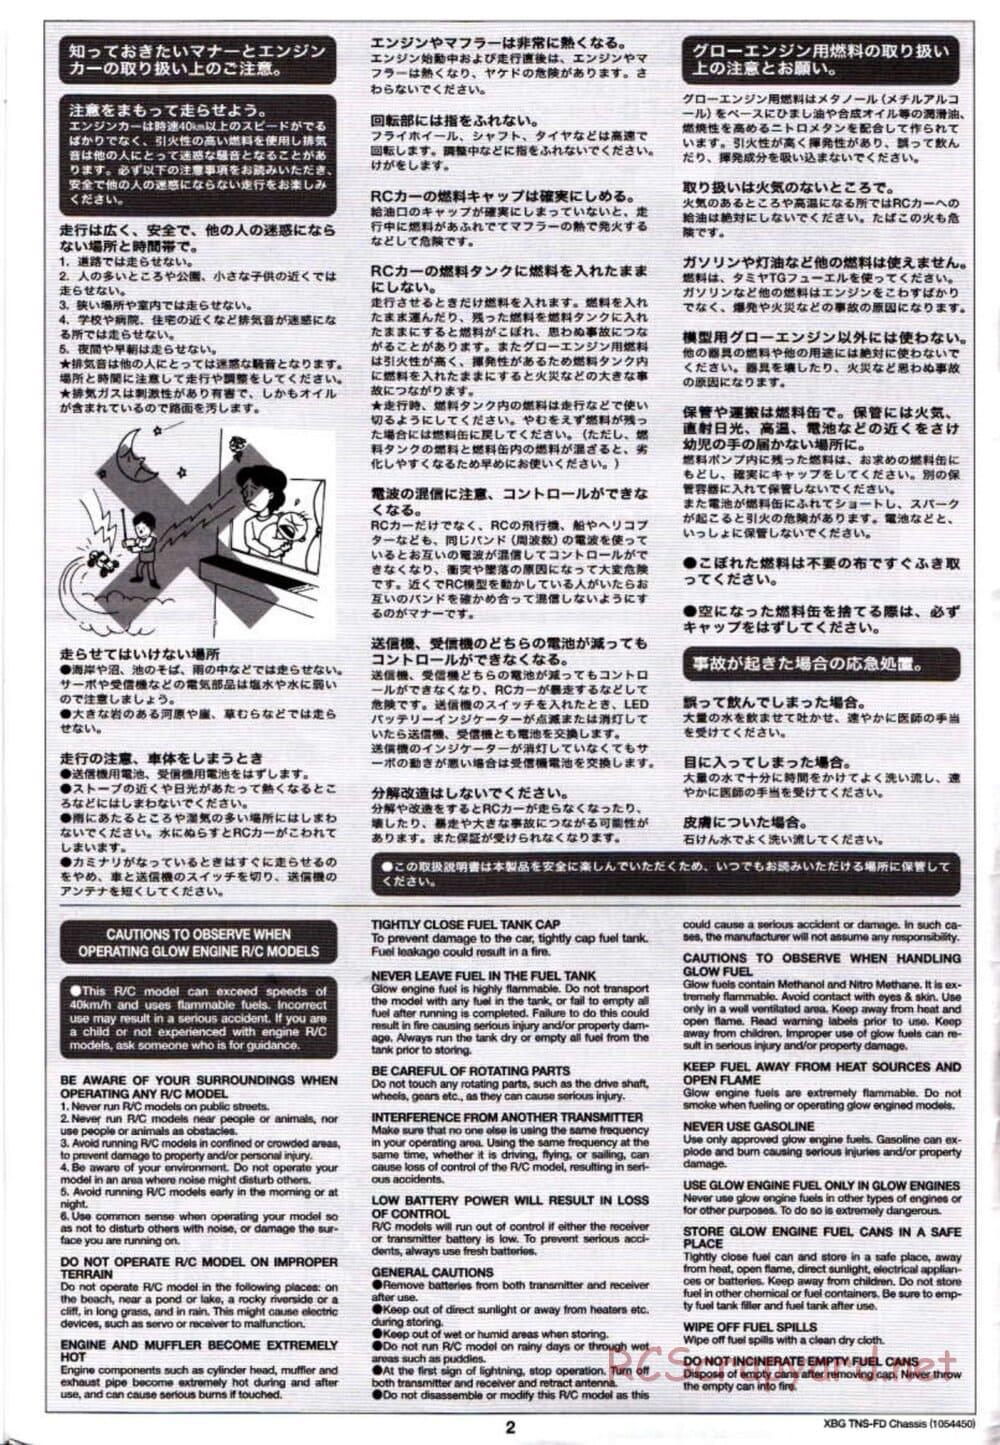 Tamiya - TNS-FD Chassis - Manual - Page 2